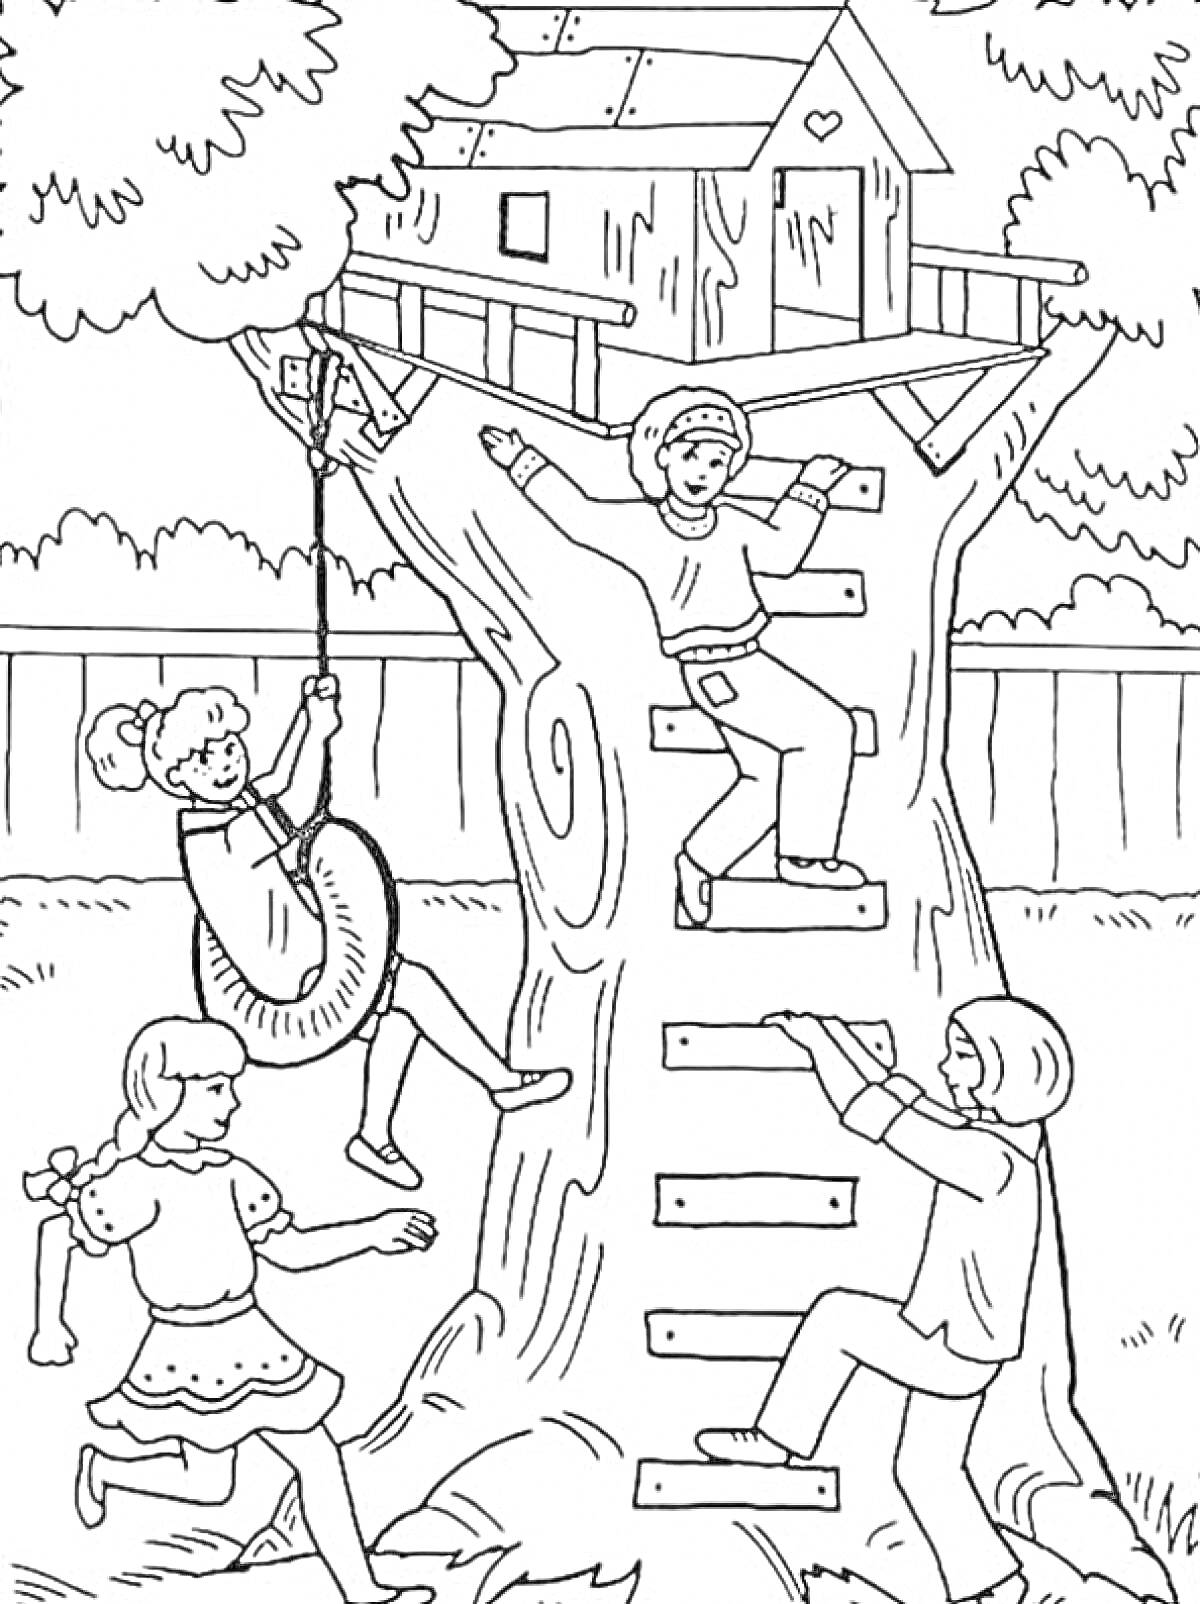 Раскраска Дети, играющие вокруг домика на дереве с лестницей и качелями